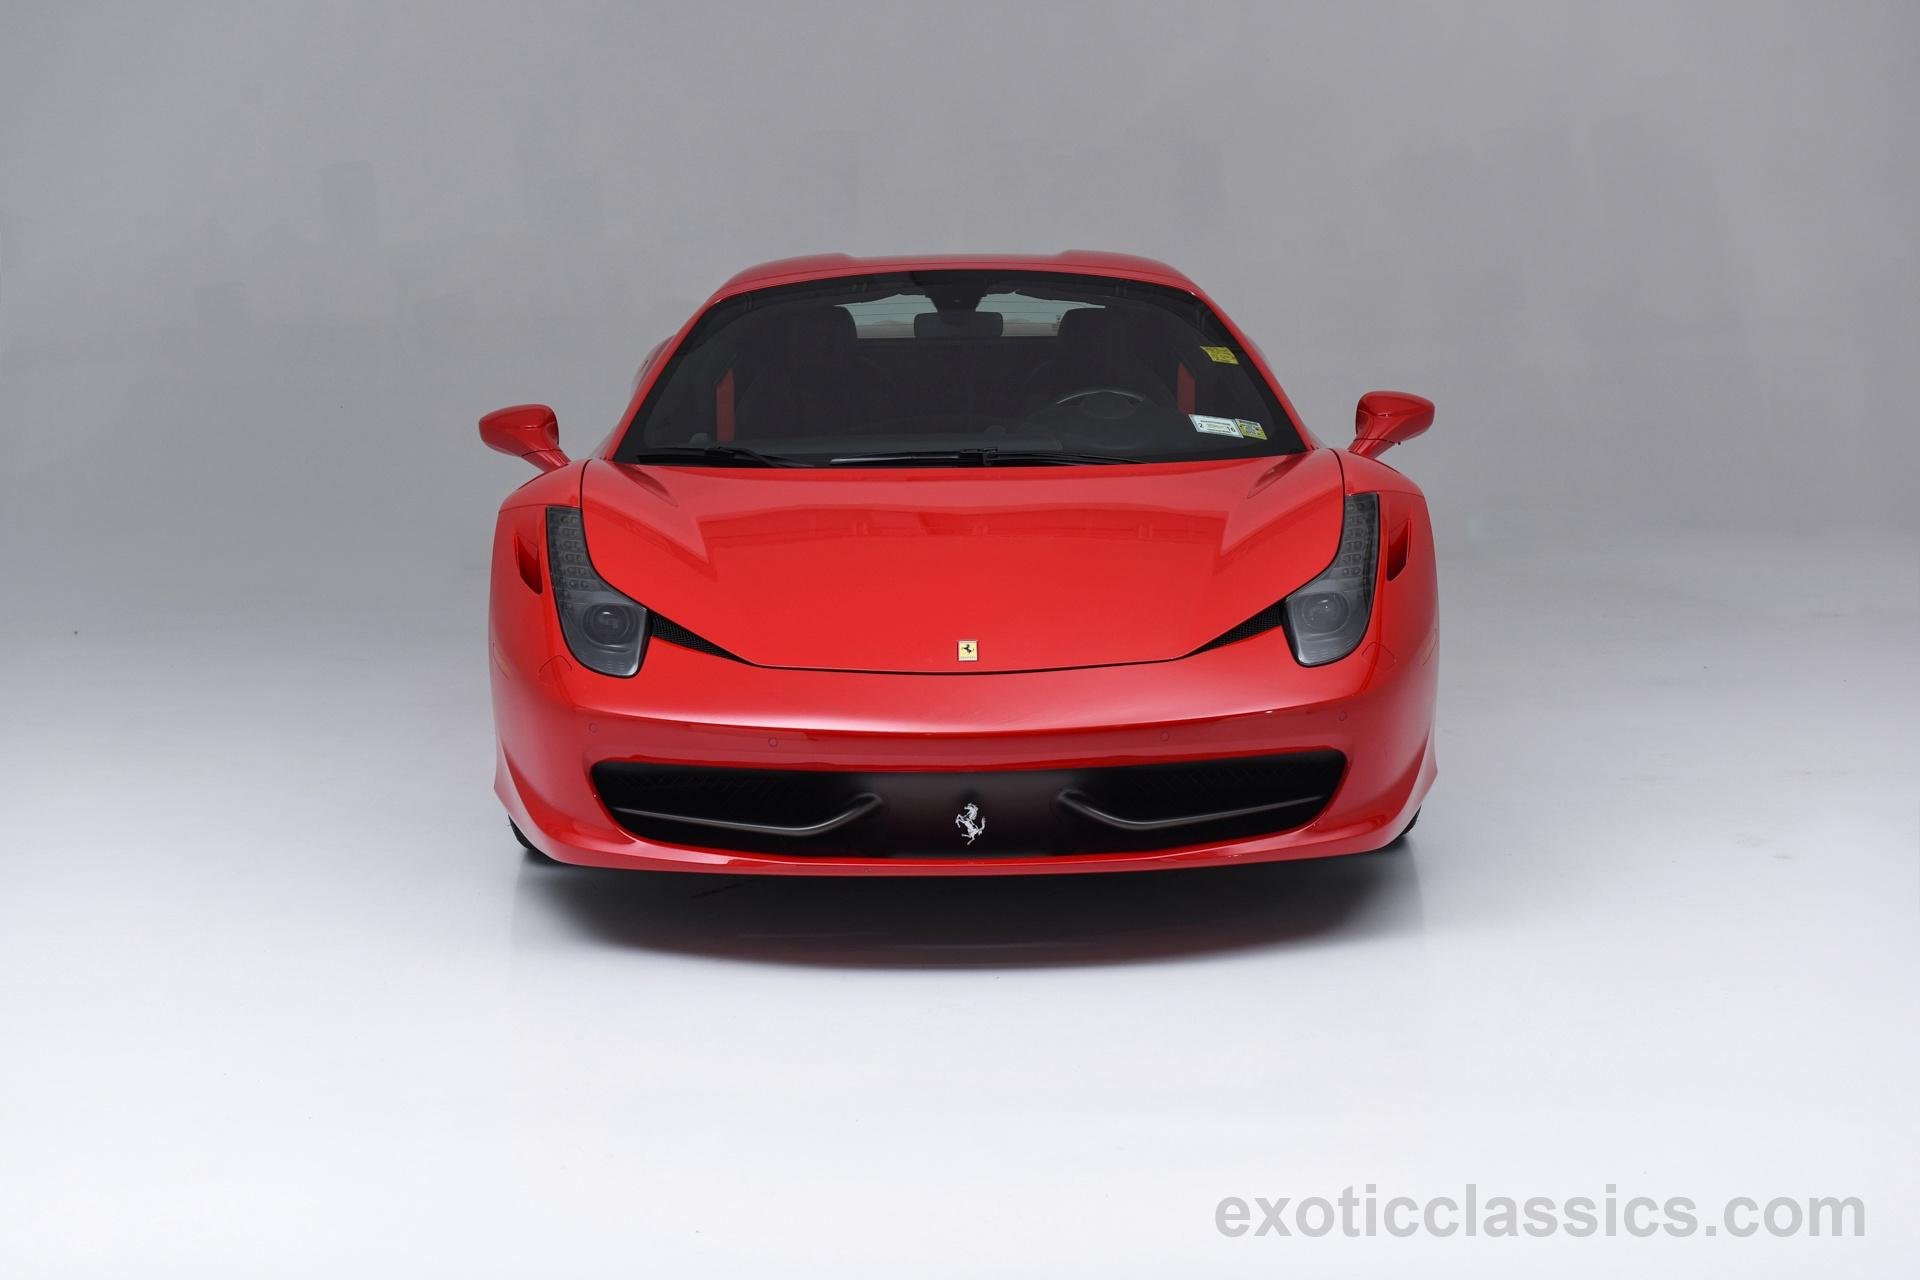 2014, Ferrari, 458, Spider, Rosso, Corsa, Red, Cars Wallpaper